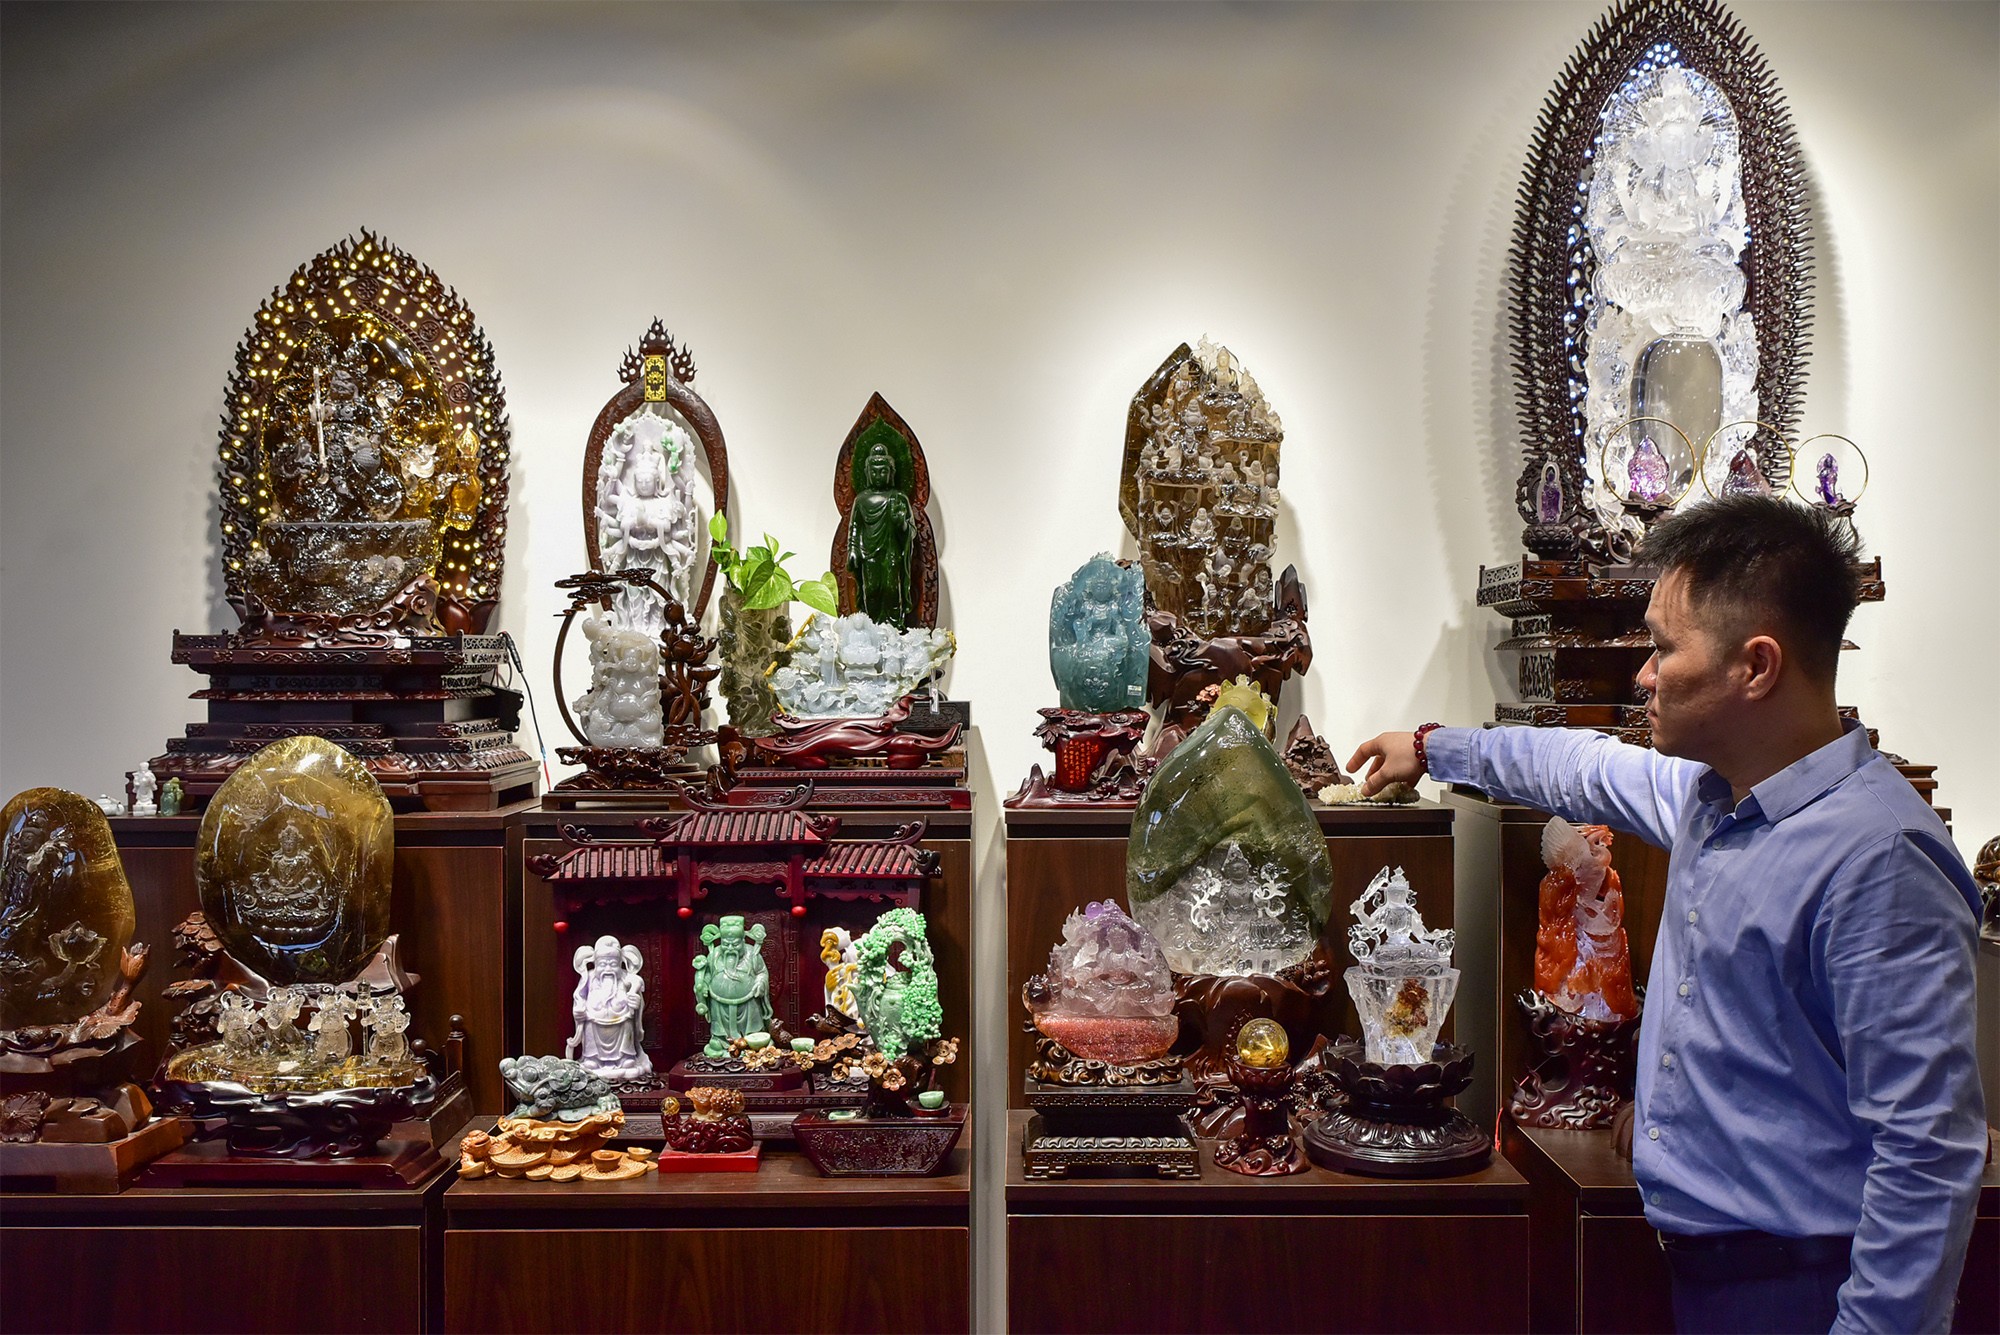 Hiện tại, anh Khoa có bộ sưu tập lên đến hàng nghìn tác phẩm tượng, đa phần các bức tượng đá có chủ đề về Phật giáo, các nhân vật thời xưa của Việt Nam được trưng bày rất bắt mắt.